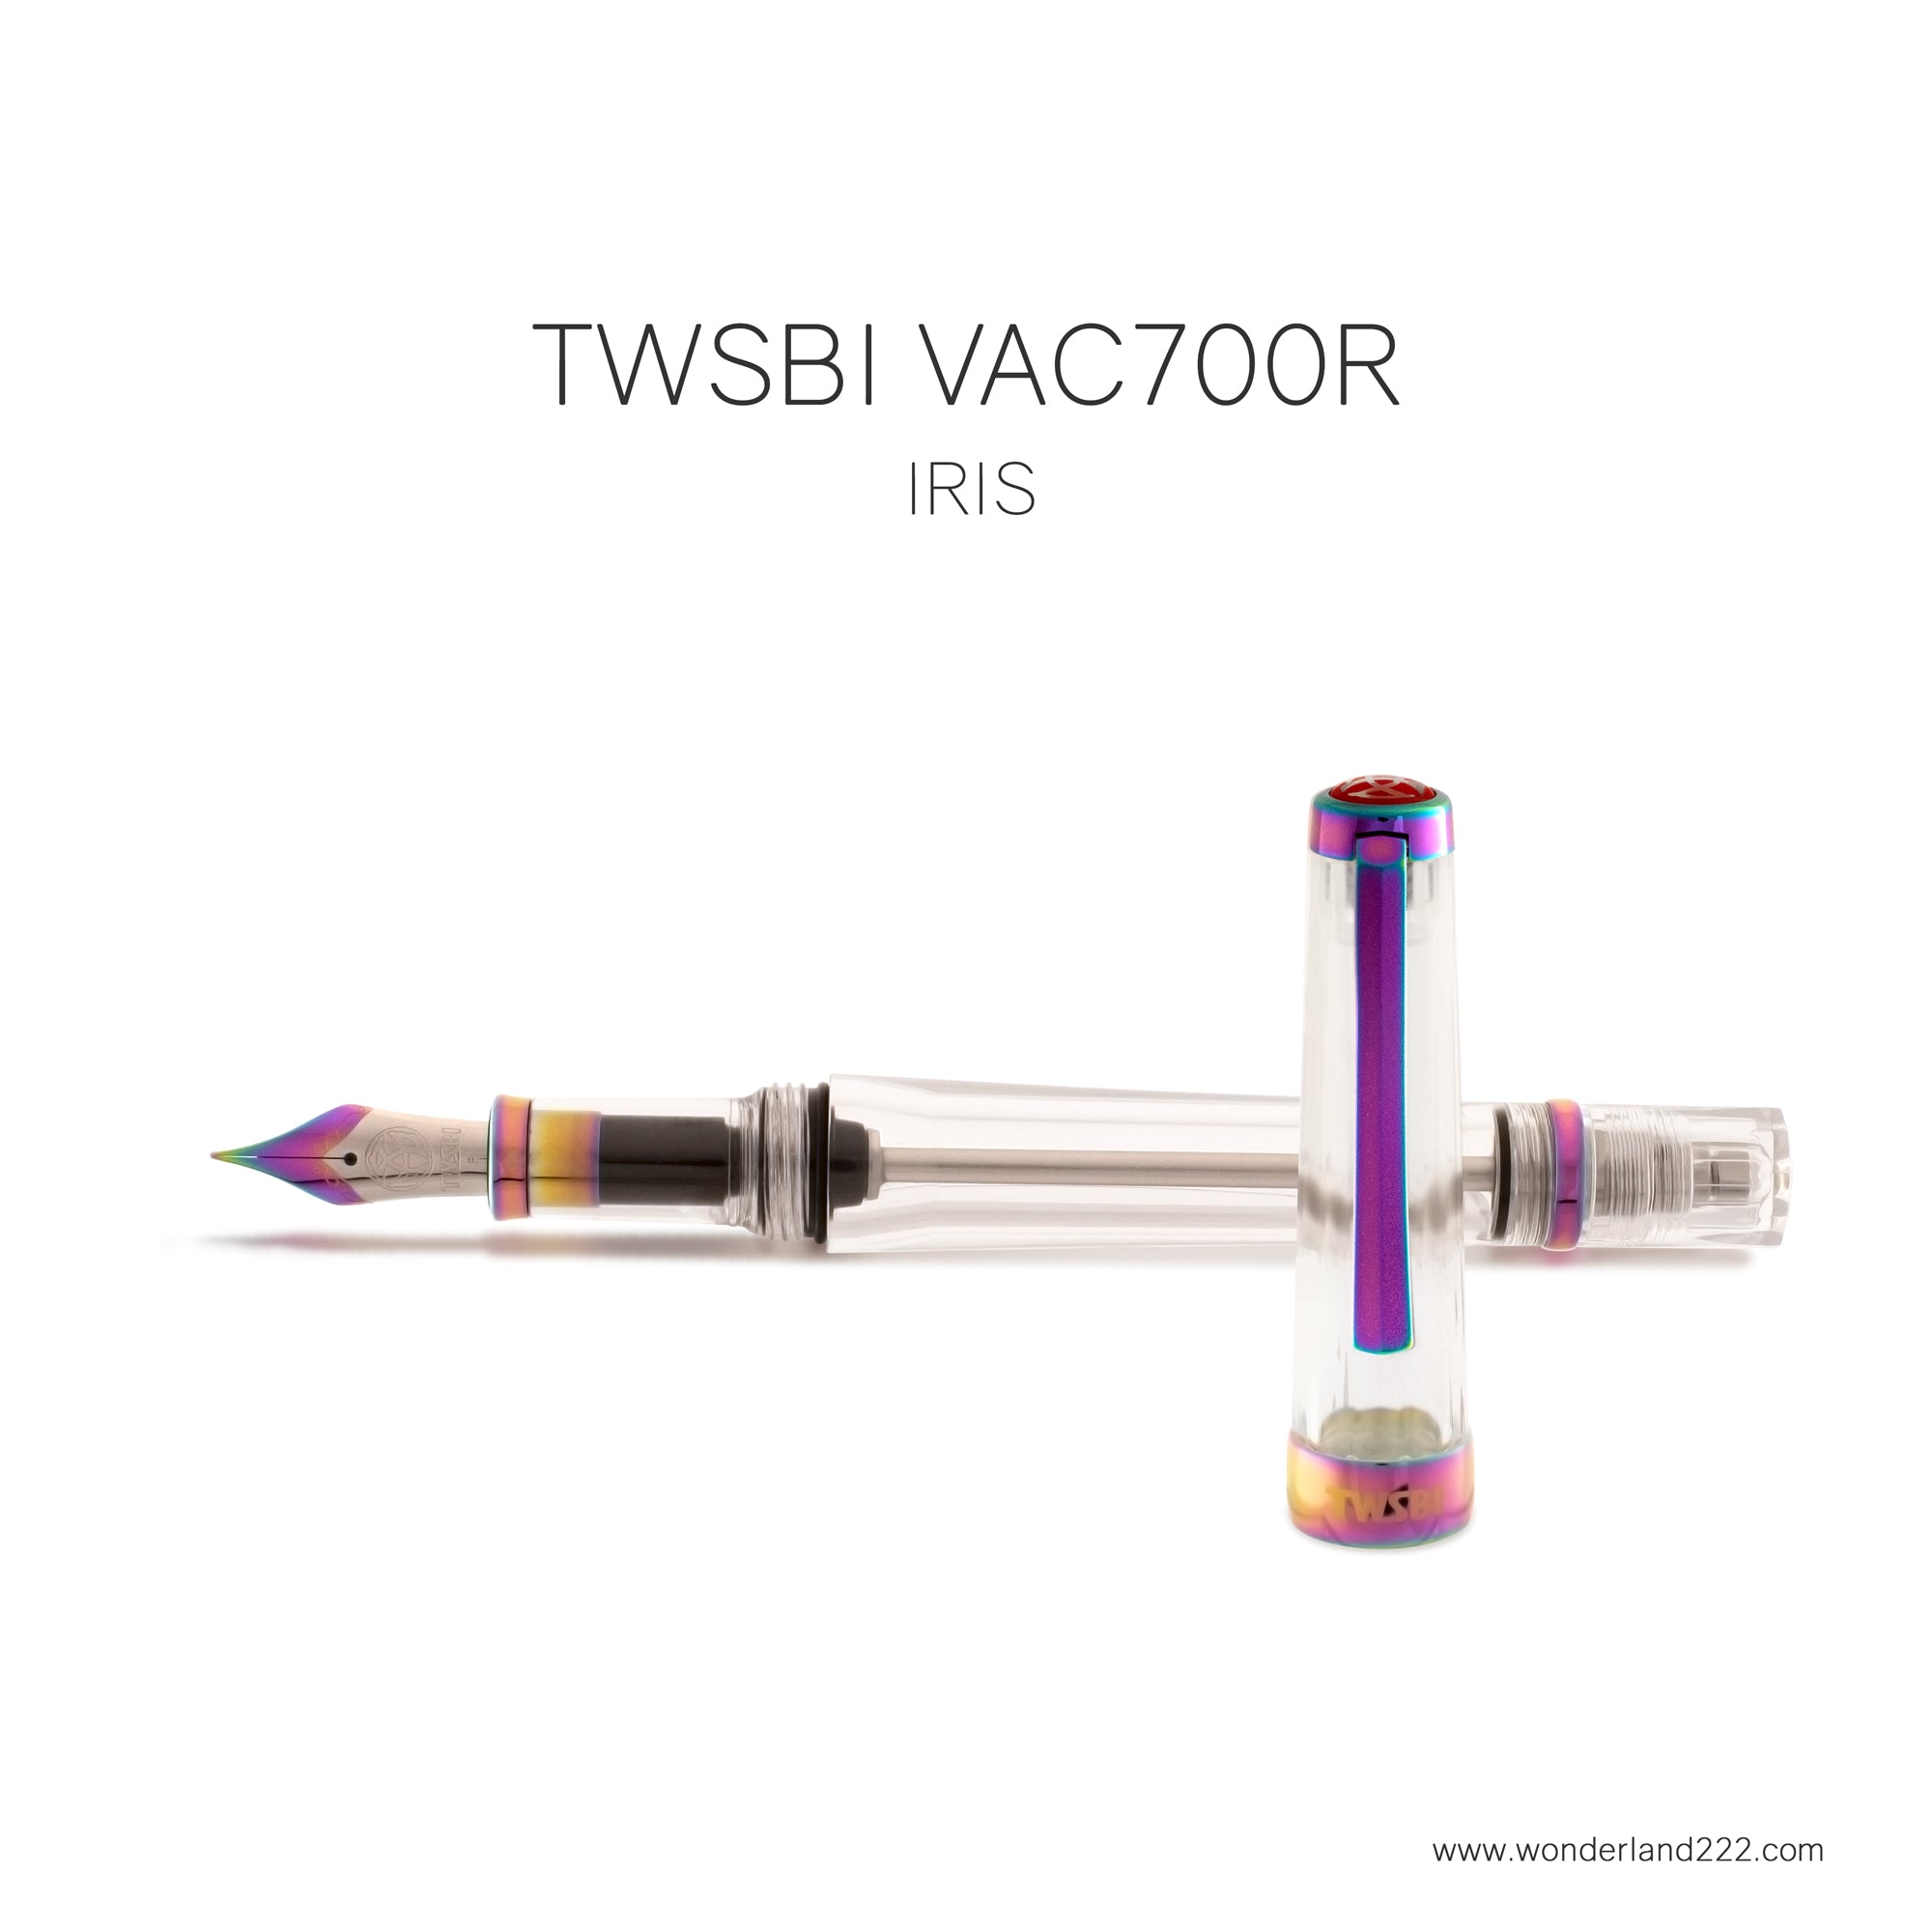 TWSBI-VAC700IR-Iris-Image1.jpg